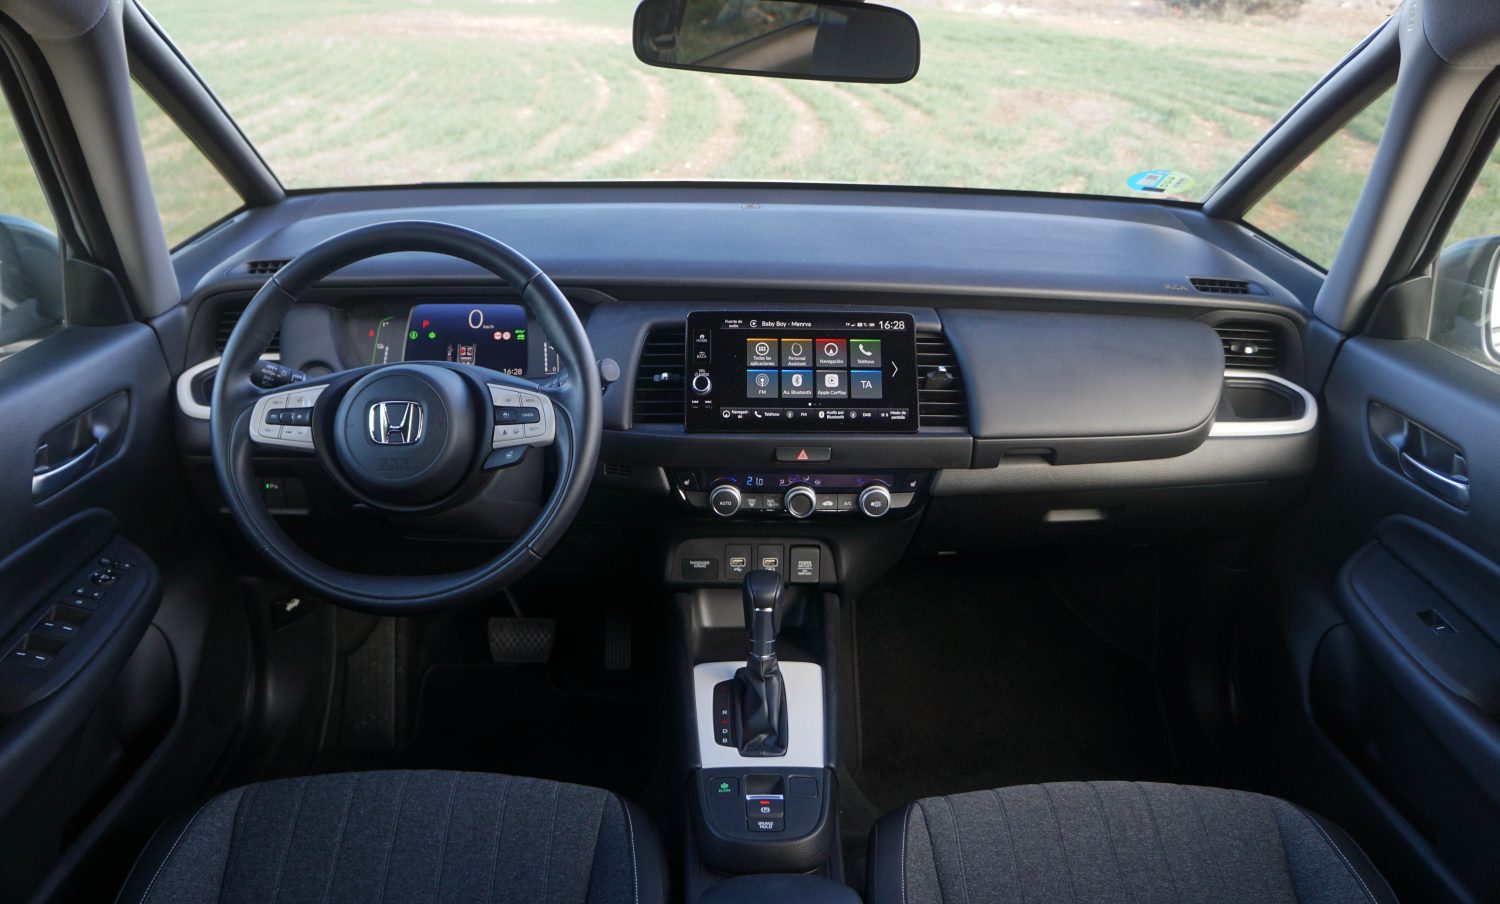 Honda Jazz interior - Cockpit